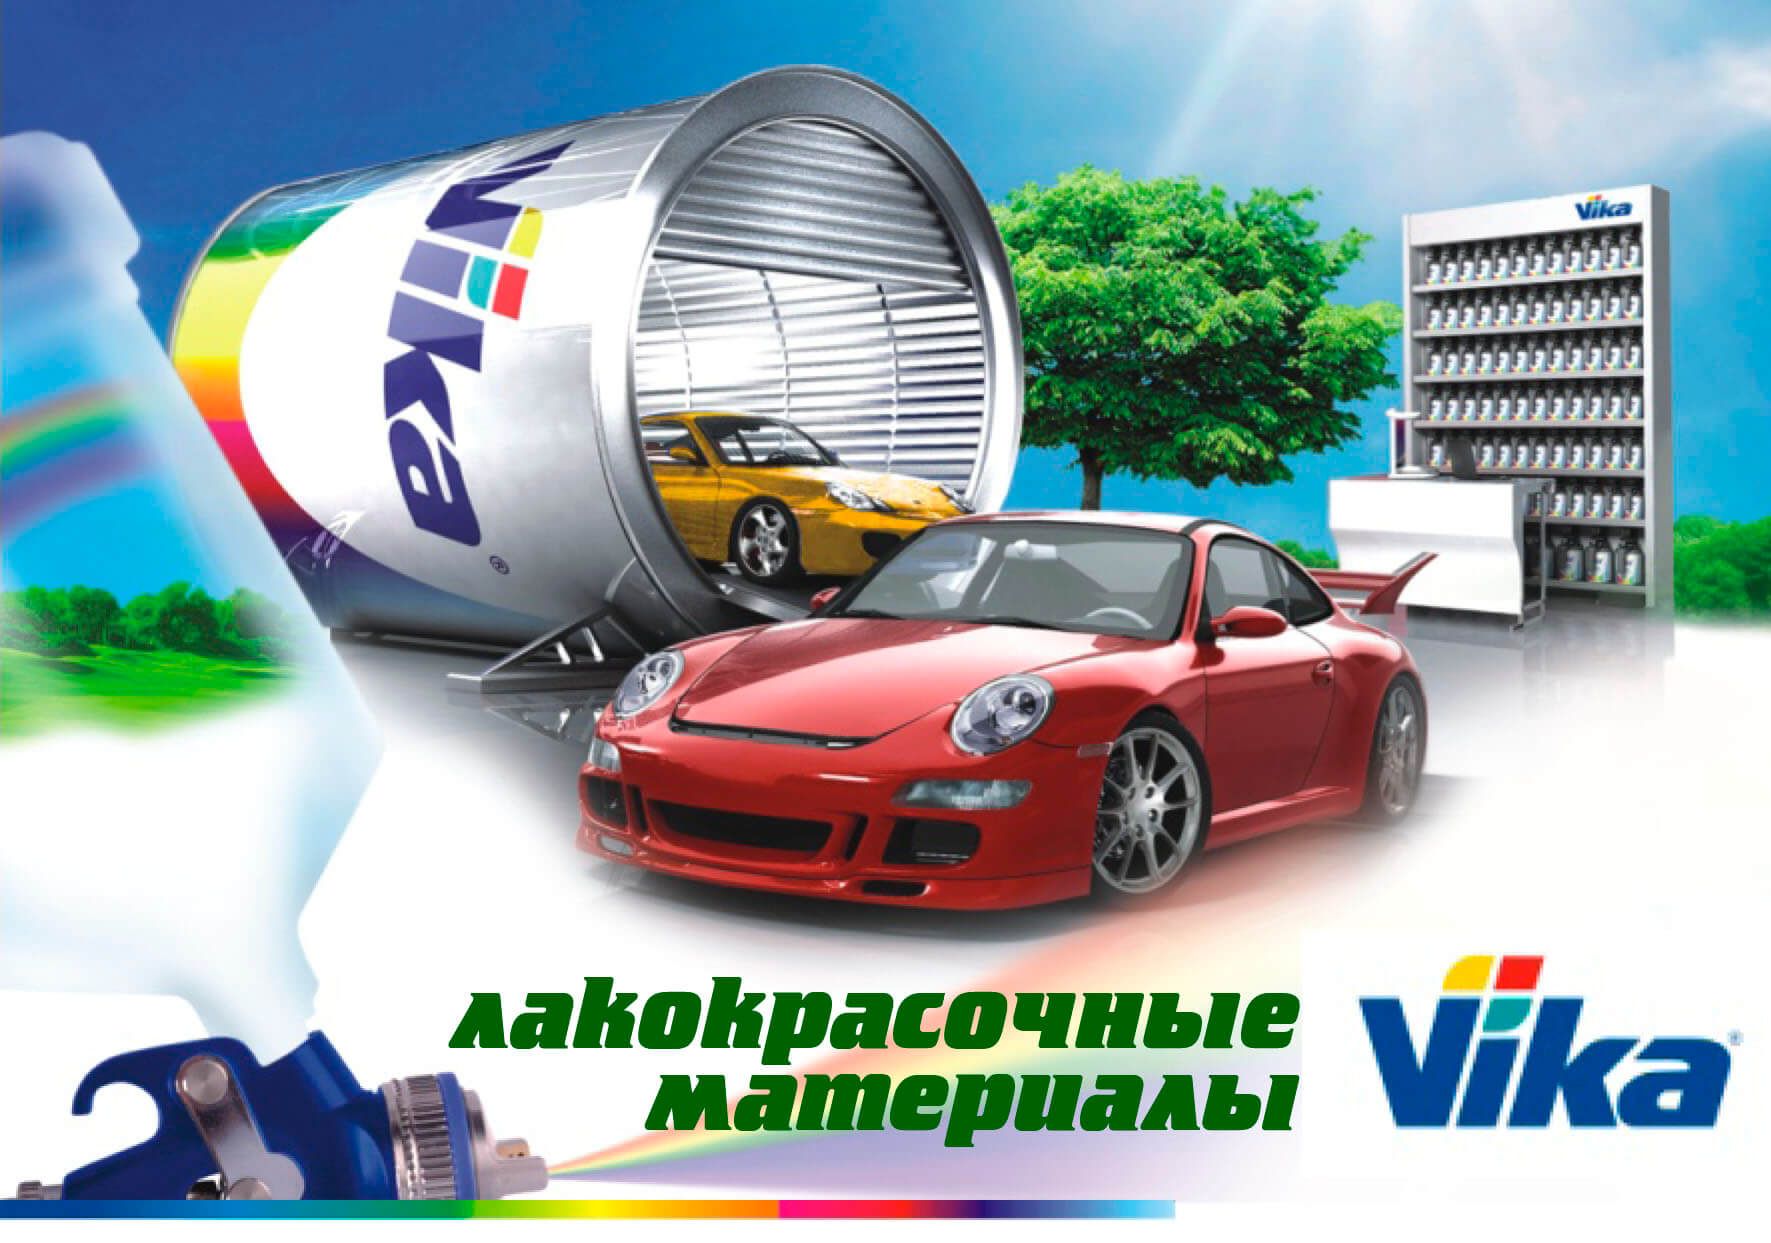 Автоэмаль Vika - качественный бренд для автомобилей